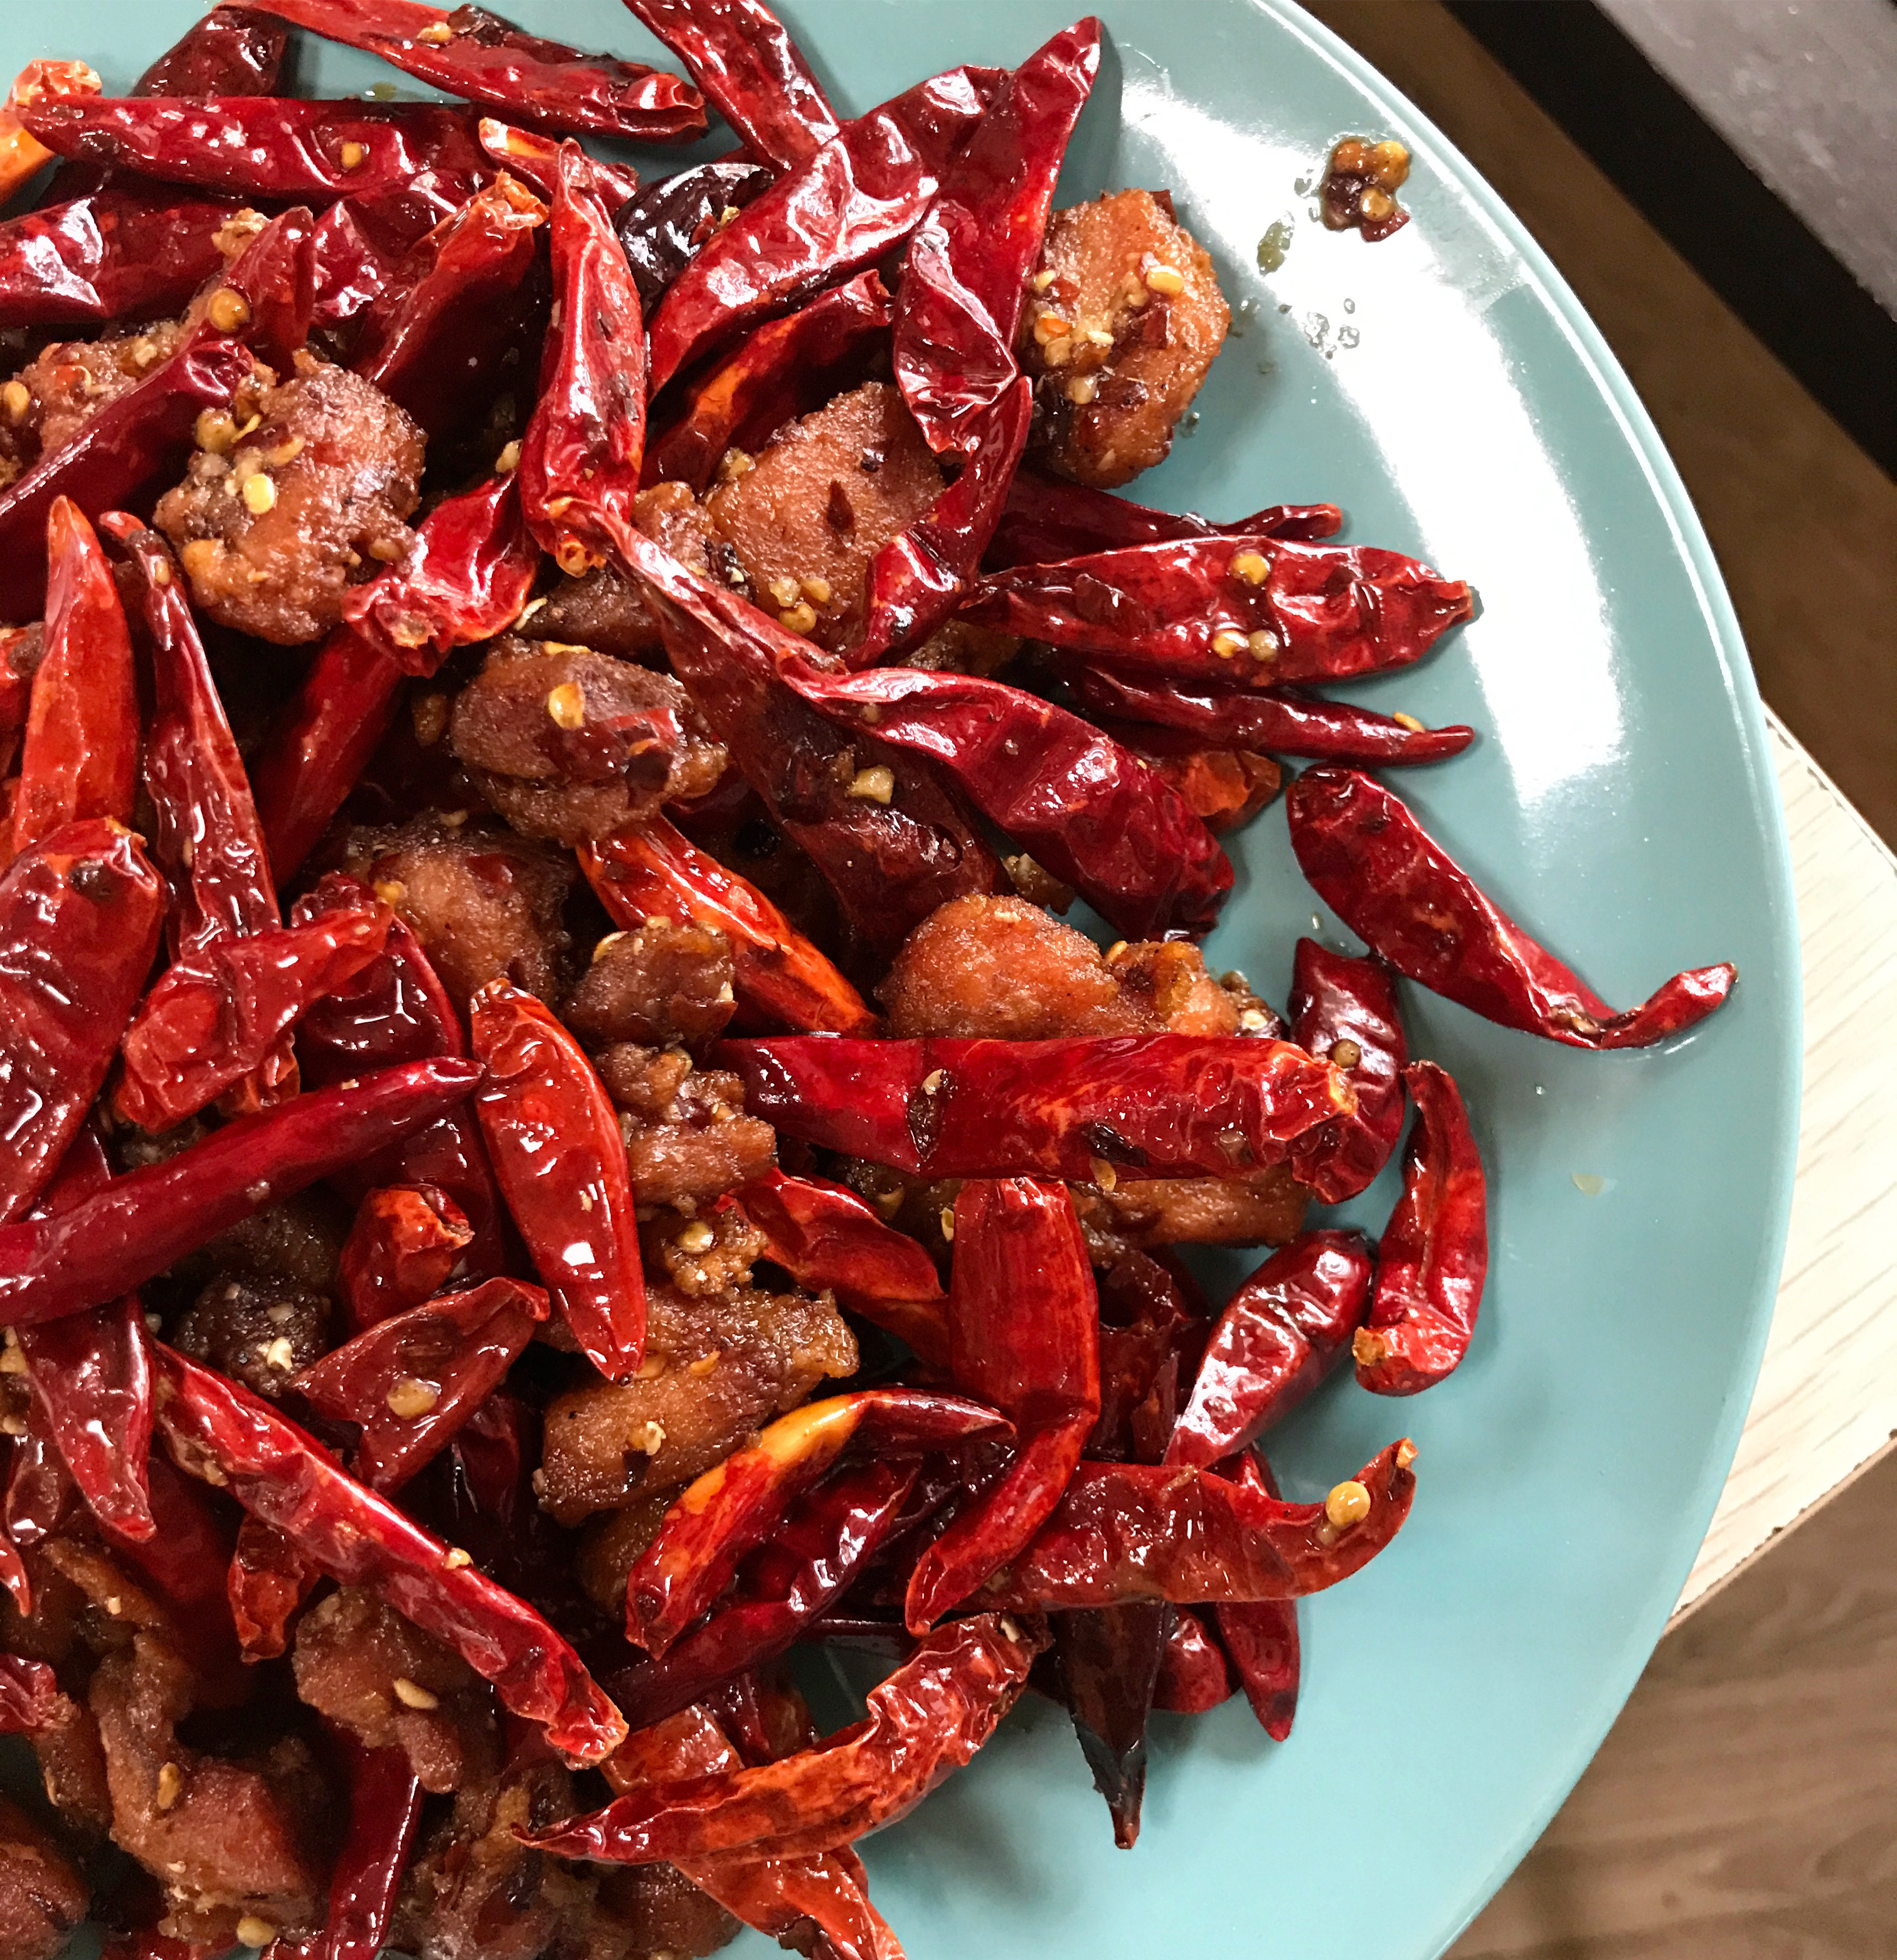 Chongqing spicy chicken from Chong Qing Hot Pot at Atlanta Chinatown